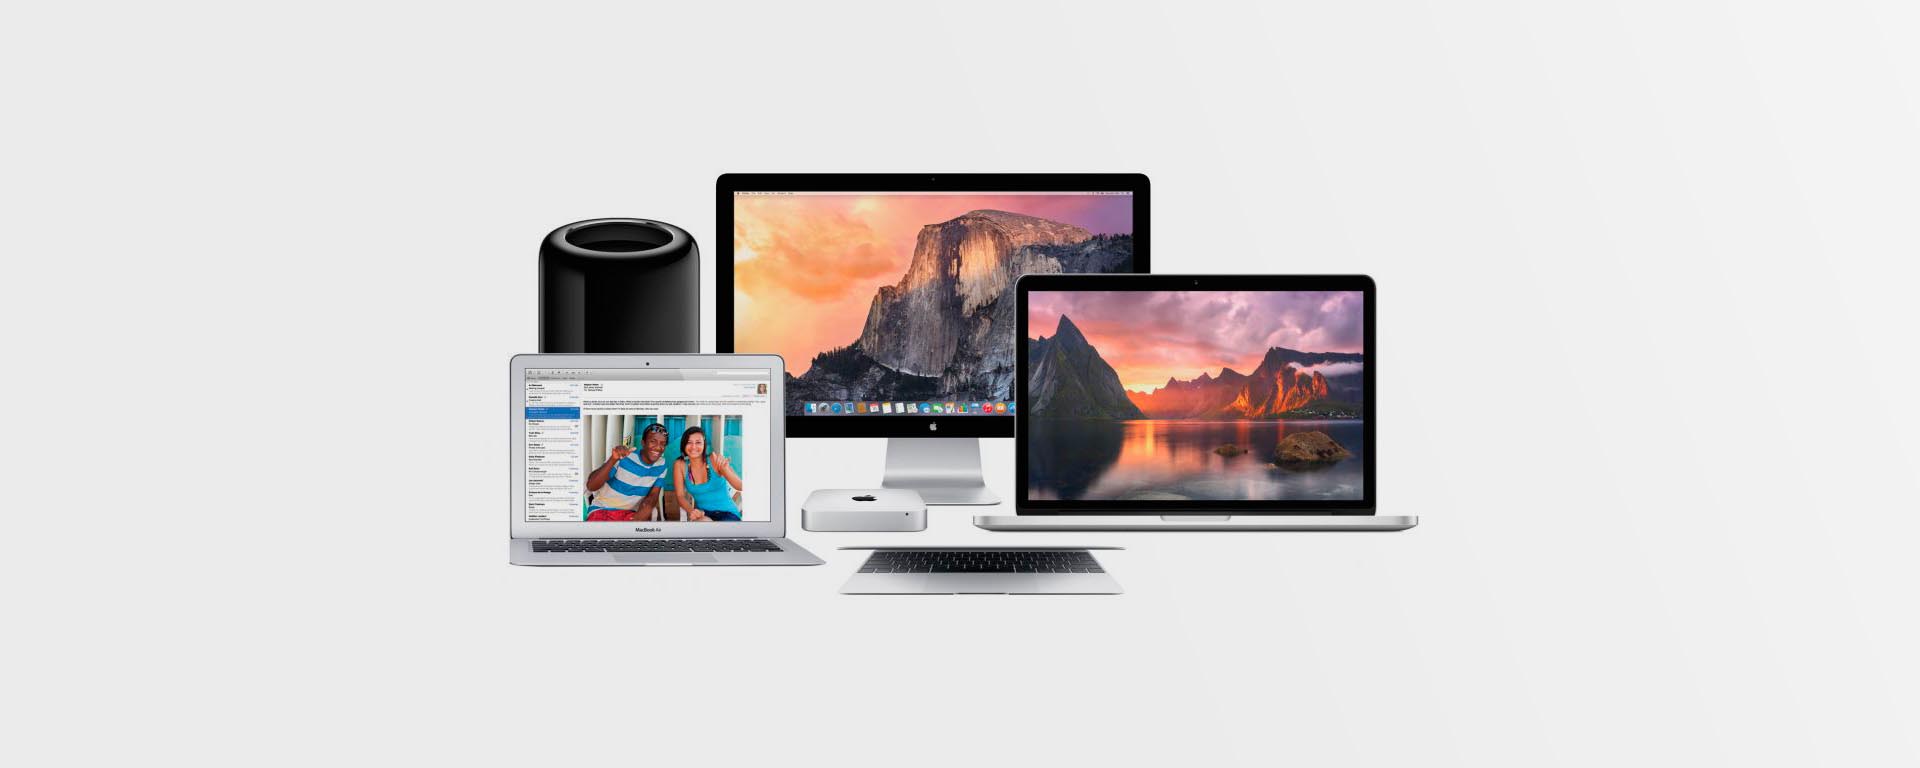 Лучшие компьютеры Mac в 2015 году